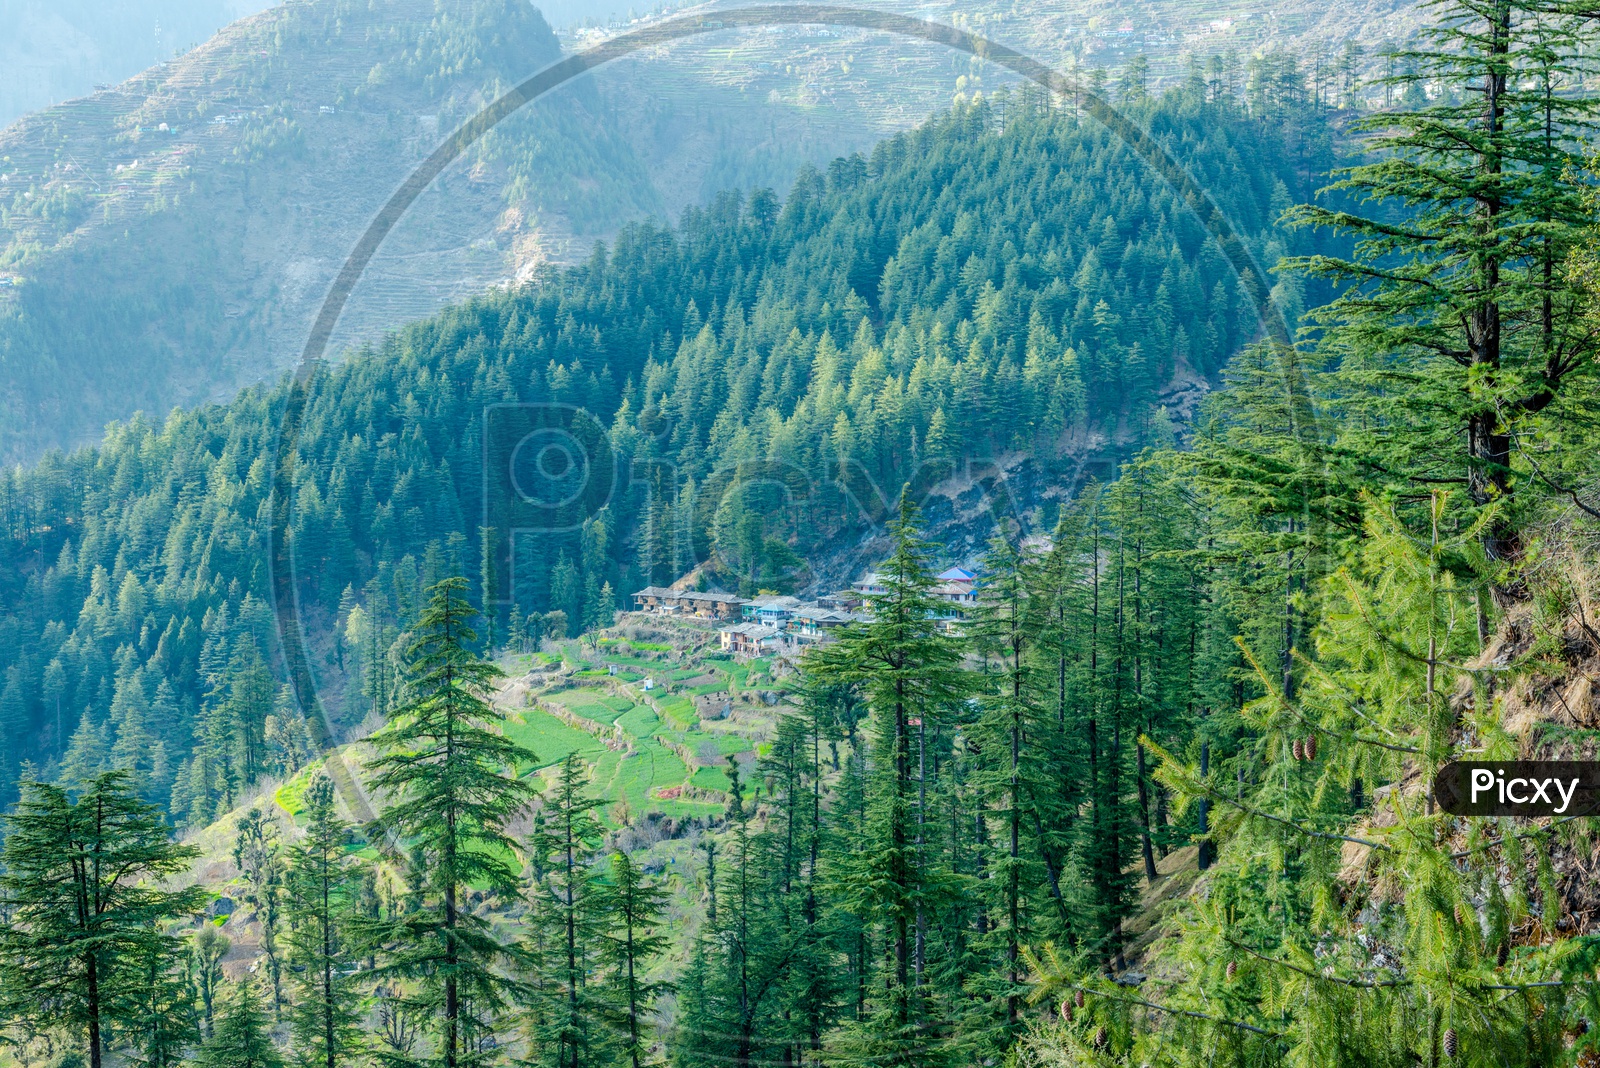 Deodar tree Landscape of mountain village near jalori pass